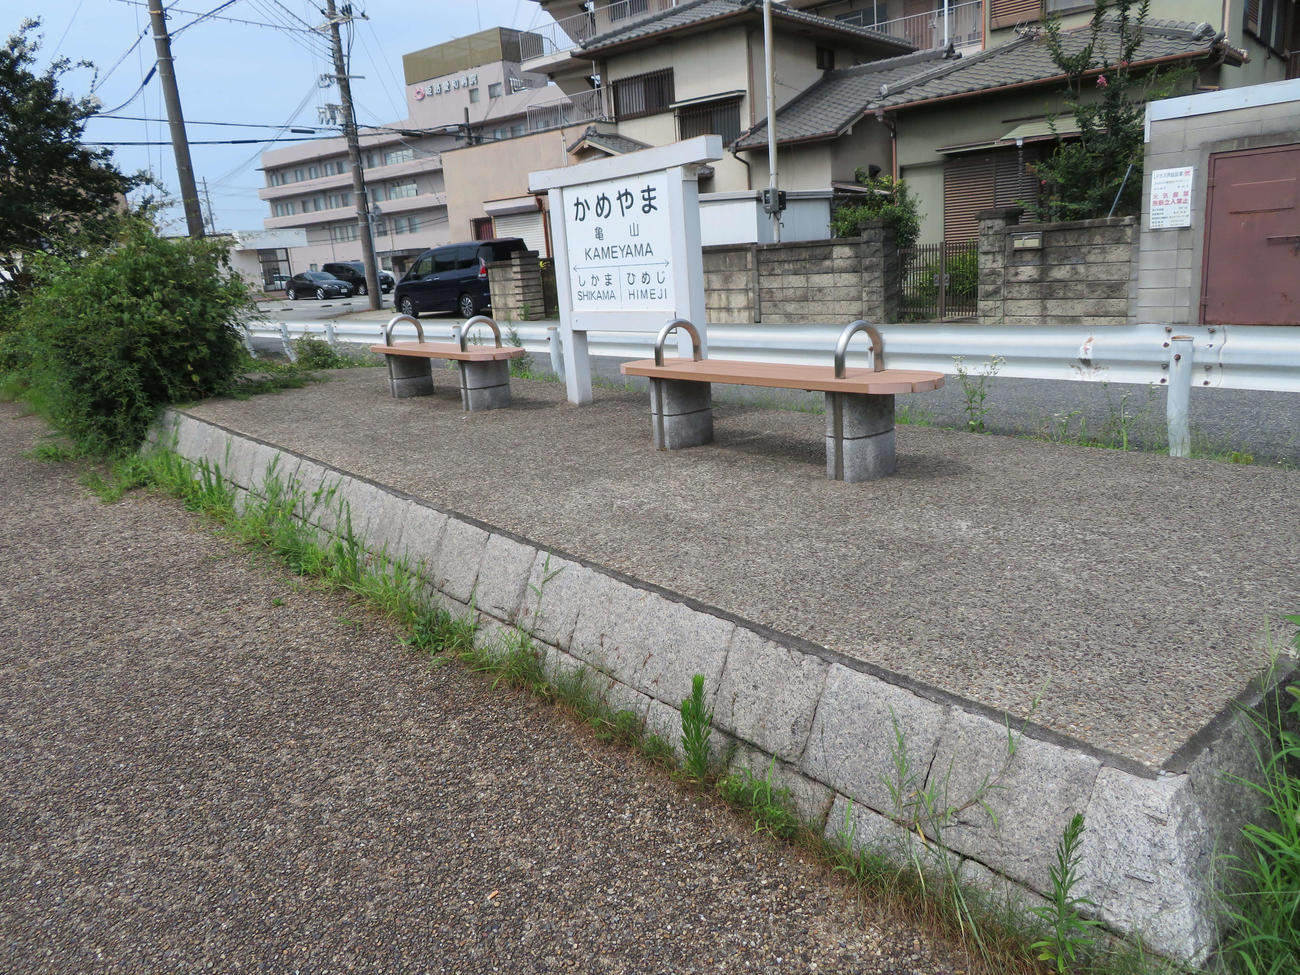 〈11〉亀山駅のあった場所には駅名標のレプリカが設置されている